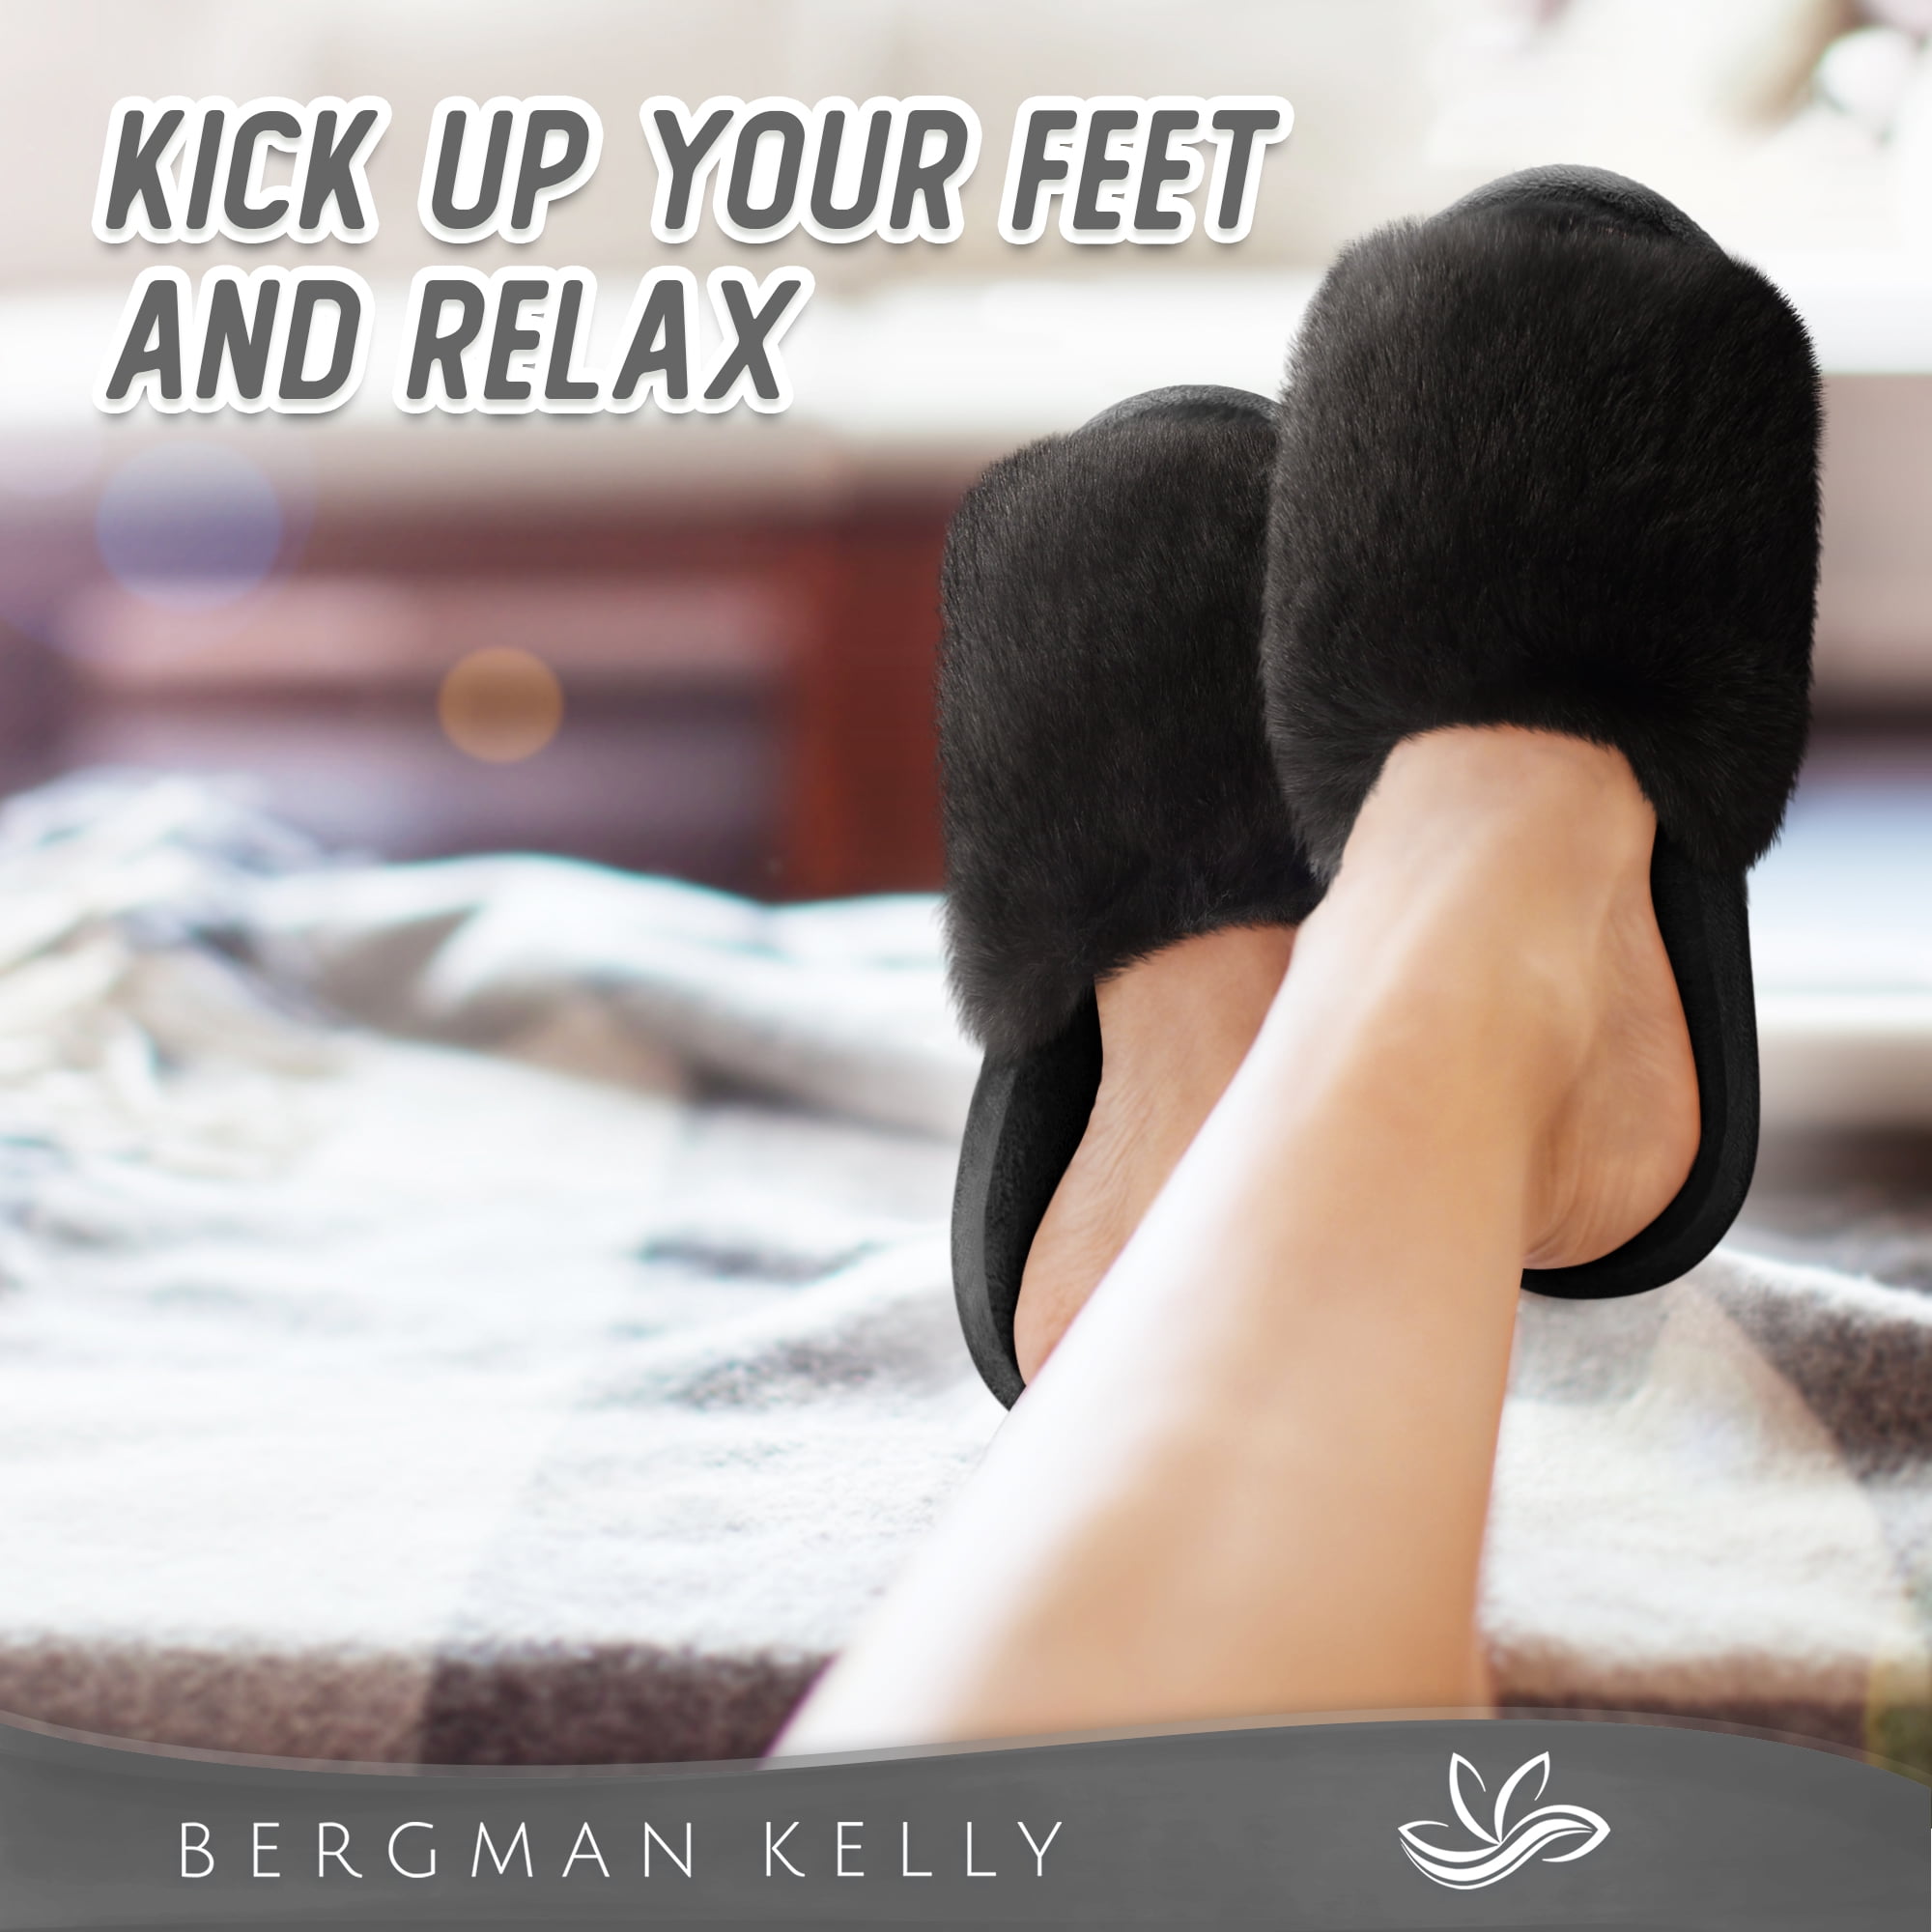 Bergman Kelly Women's Fuzzy Faux Fur Slide Slippers